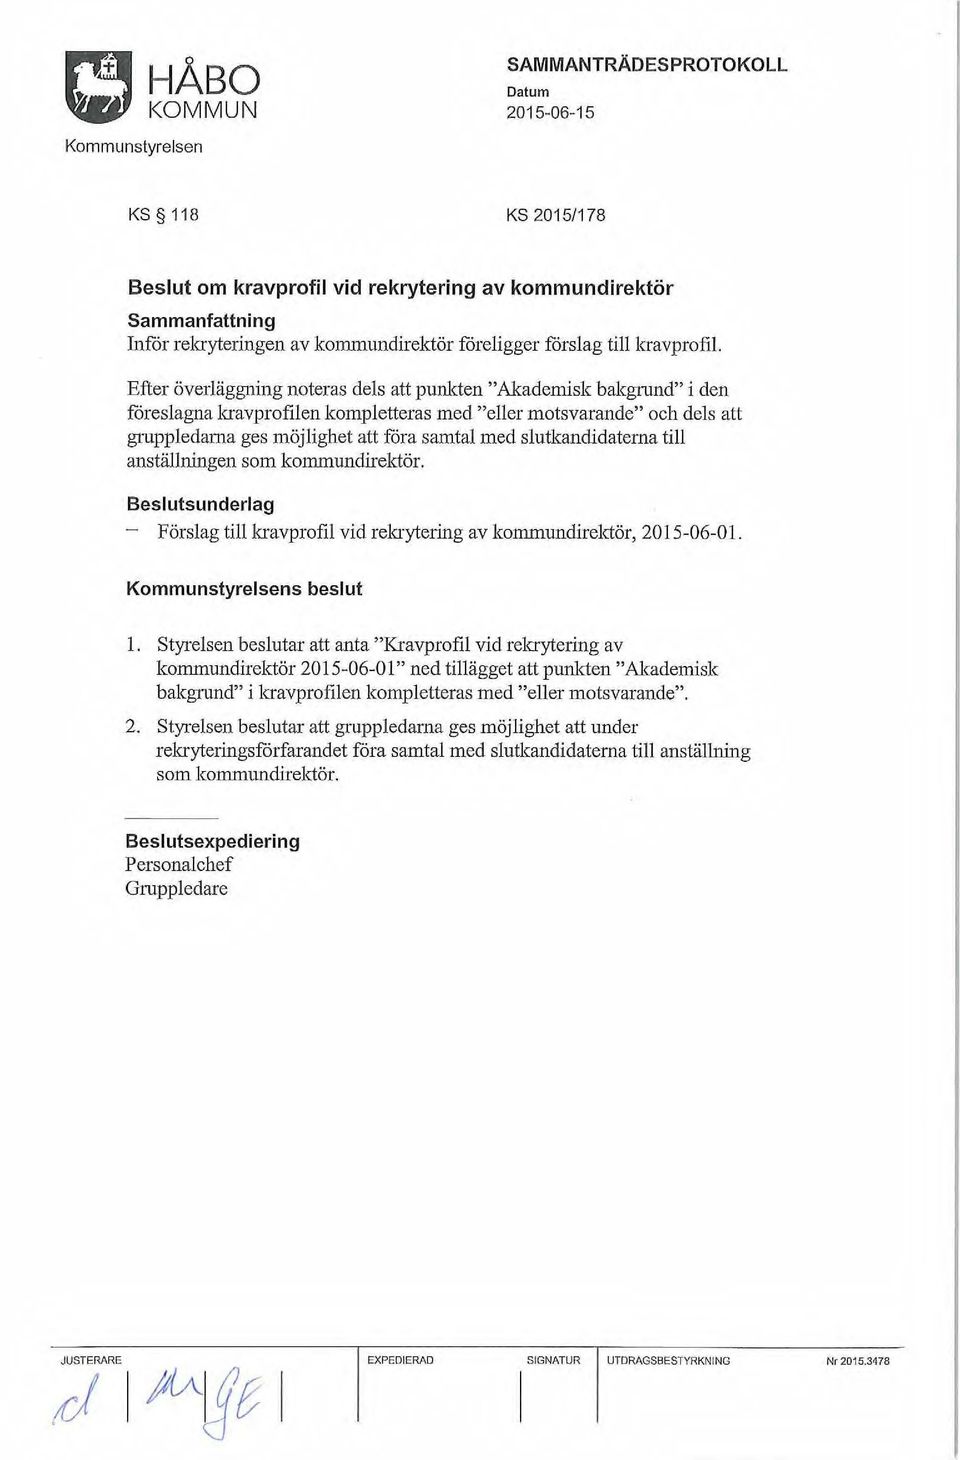 kommundirelctör. Beslutsunderlag - Förslag tillkravprofil vid rekrytering av lcommundirelctör, 2015-06-01. s beslut l.